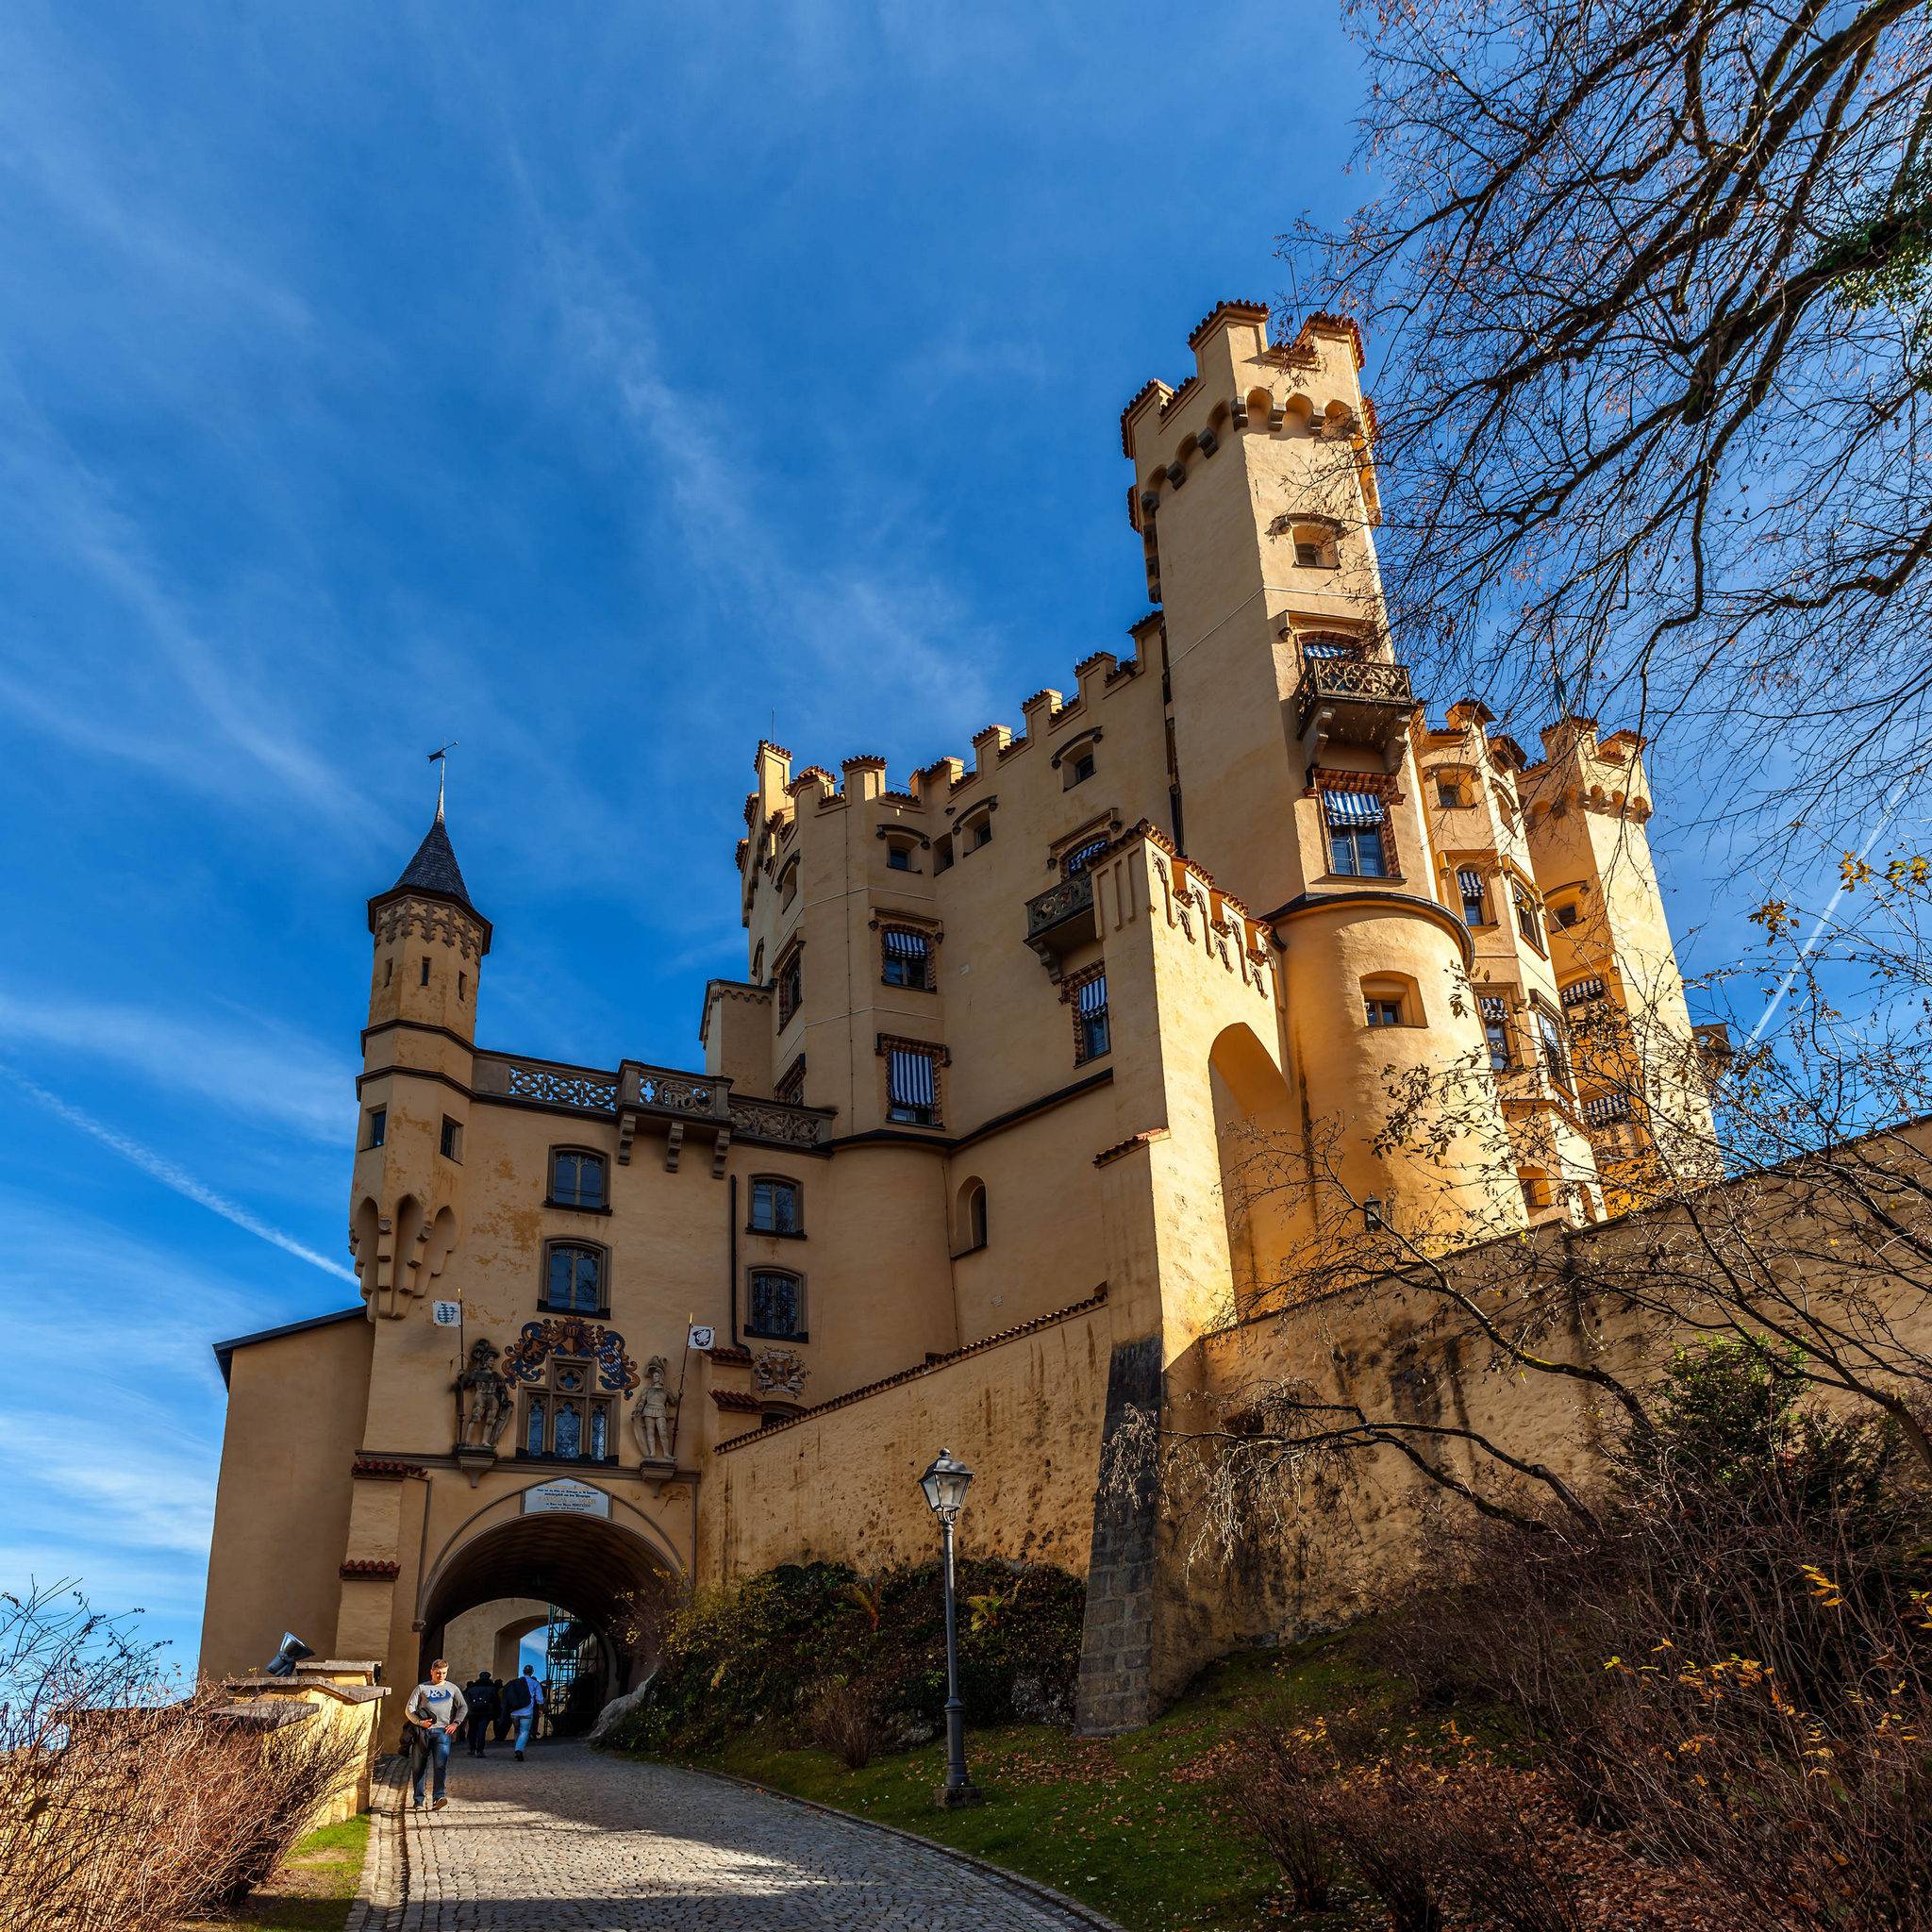 Замок нойшванштайн – «лебединый замок» в германии